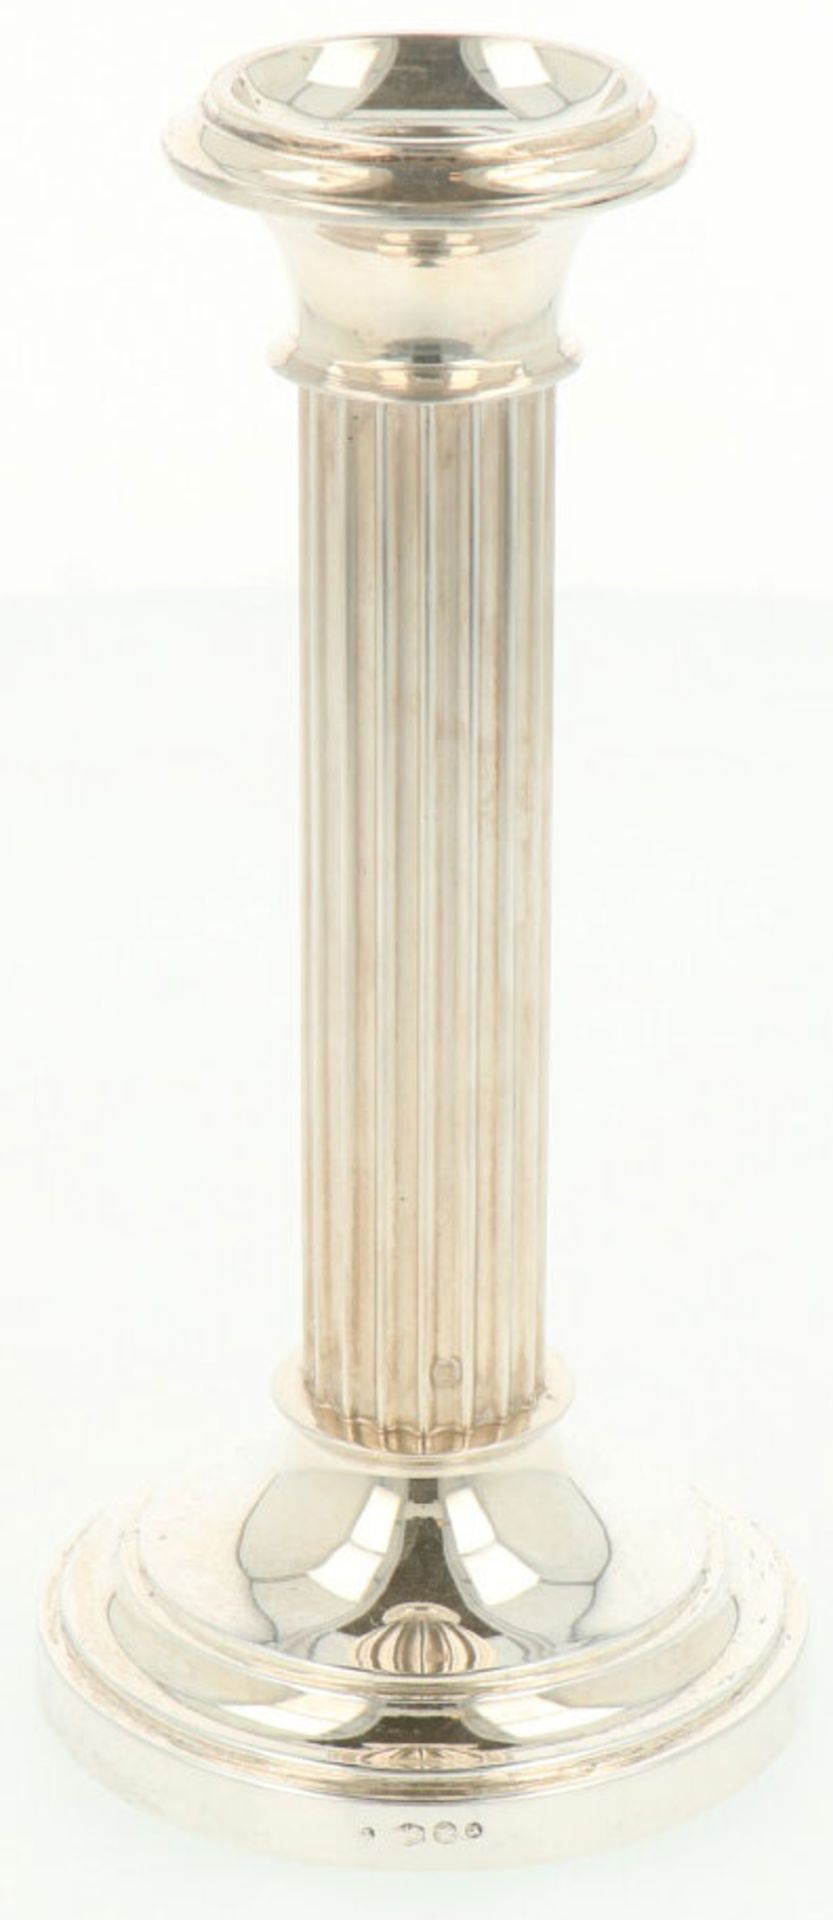 Kandelaar zilver.Baluster vormig model met verzwaarde voet. Nederland, Voorschoten, Zilverfabriek - Bild 2 aus 3